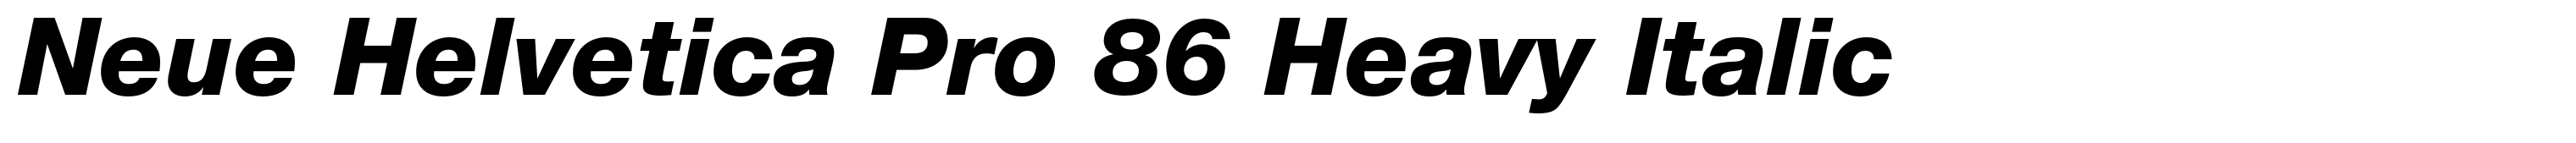 Neue Helvetica Pro 86 Heavy Italic